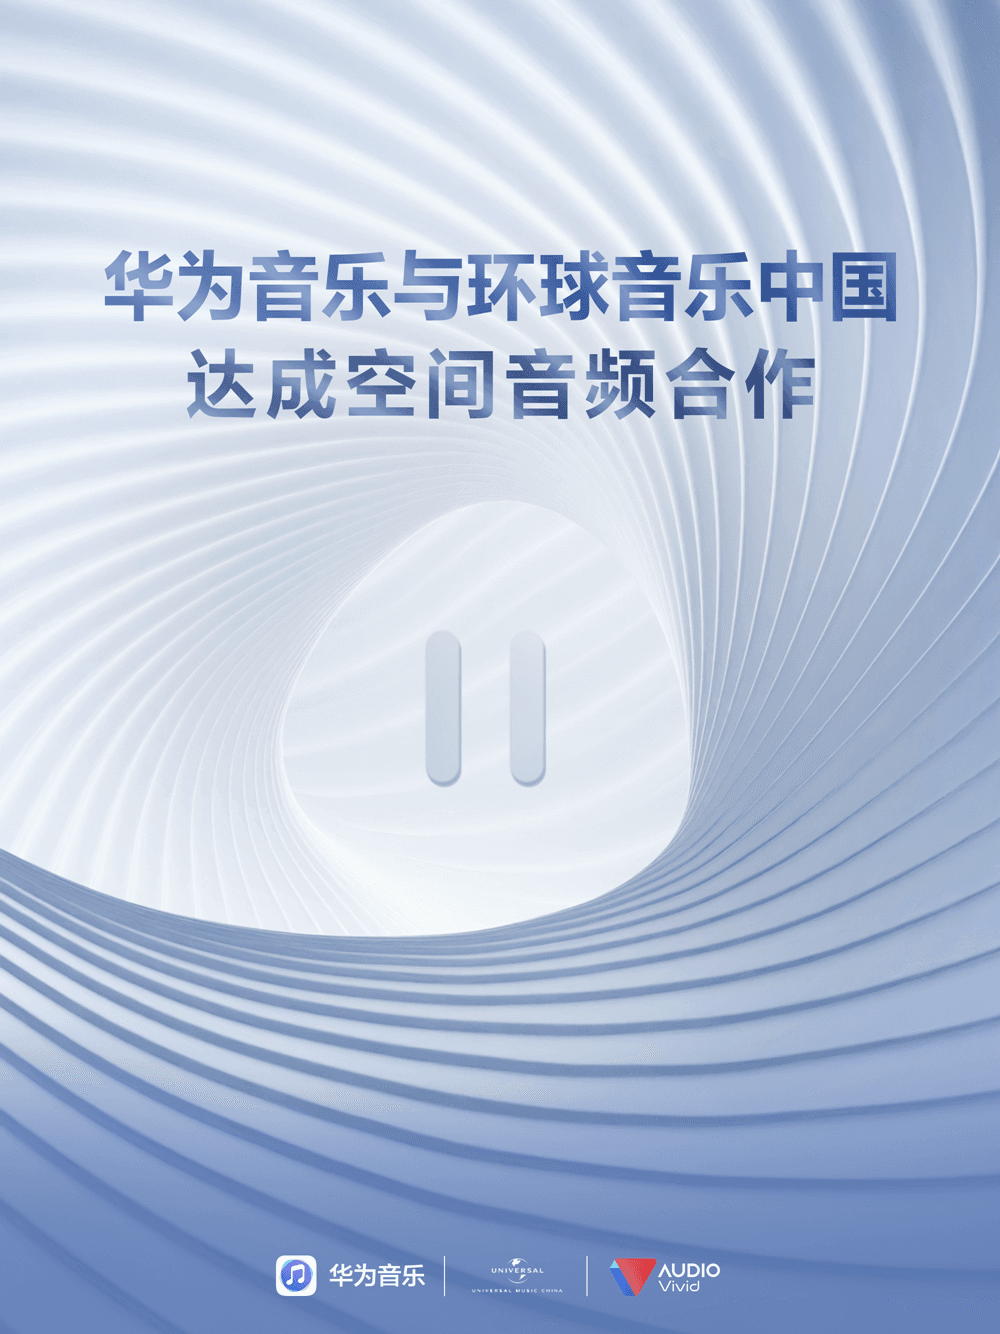 华为携手环球音乐中国与UWA联盟共建空间音频新“声”态